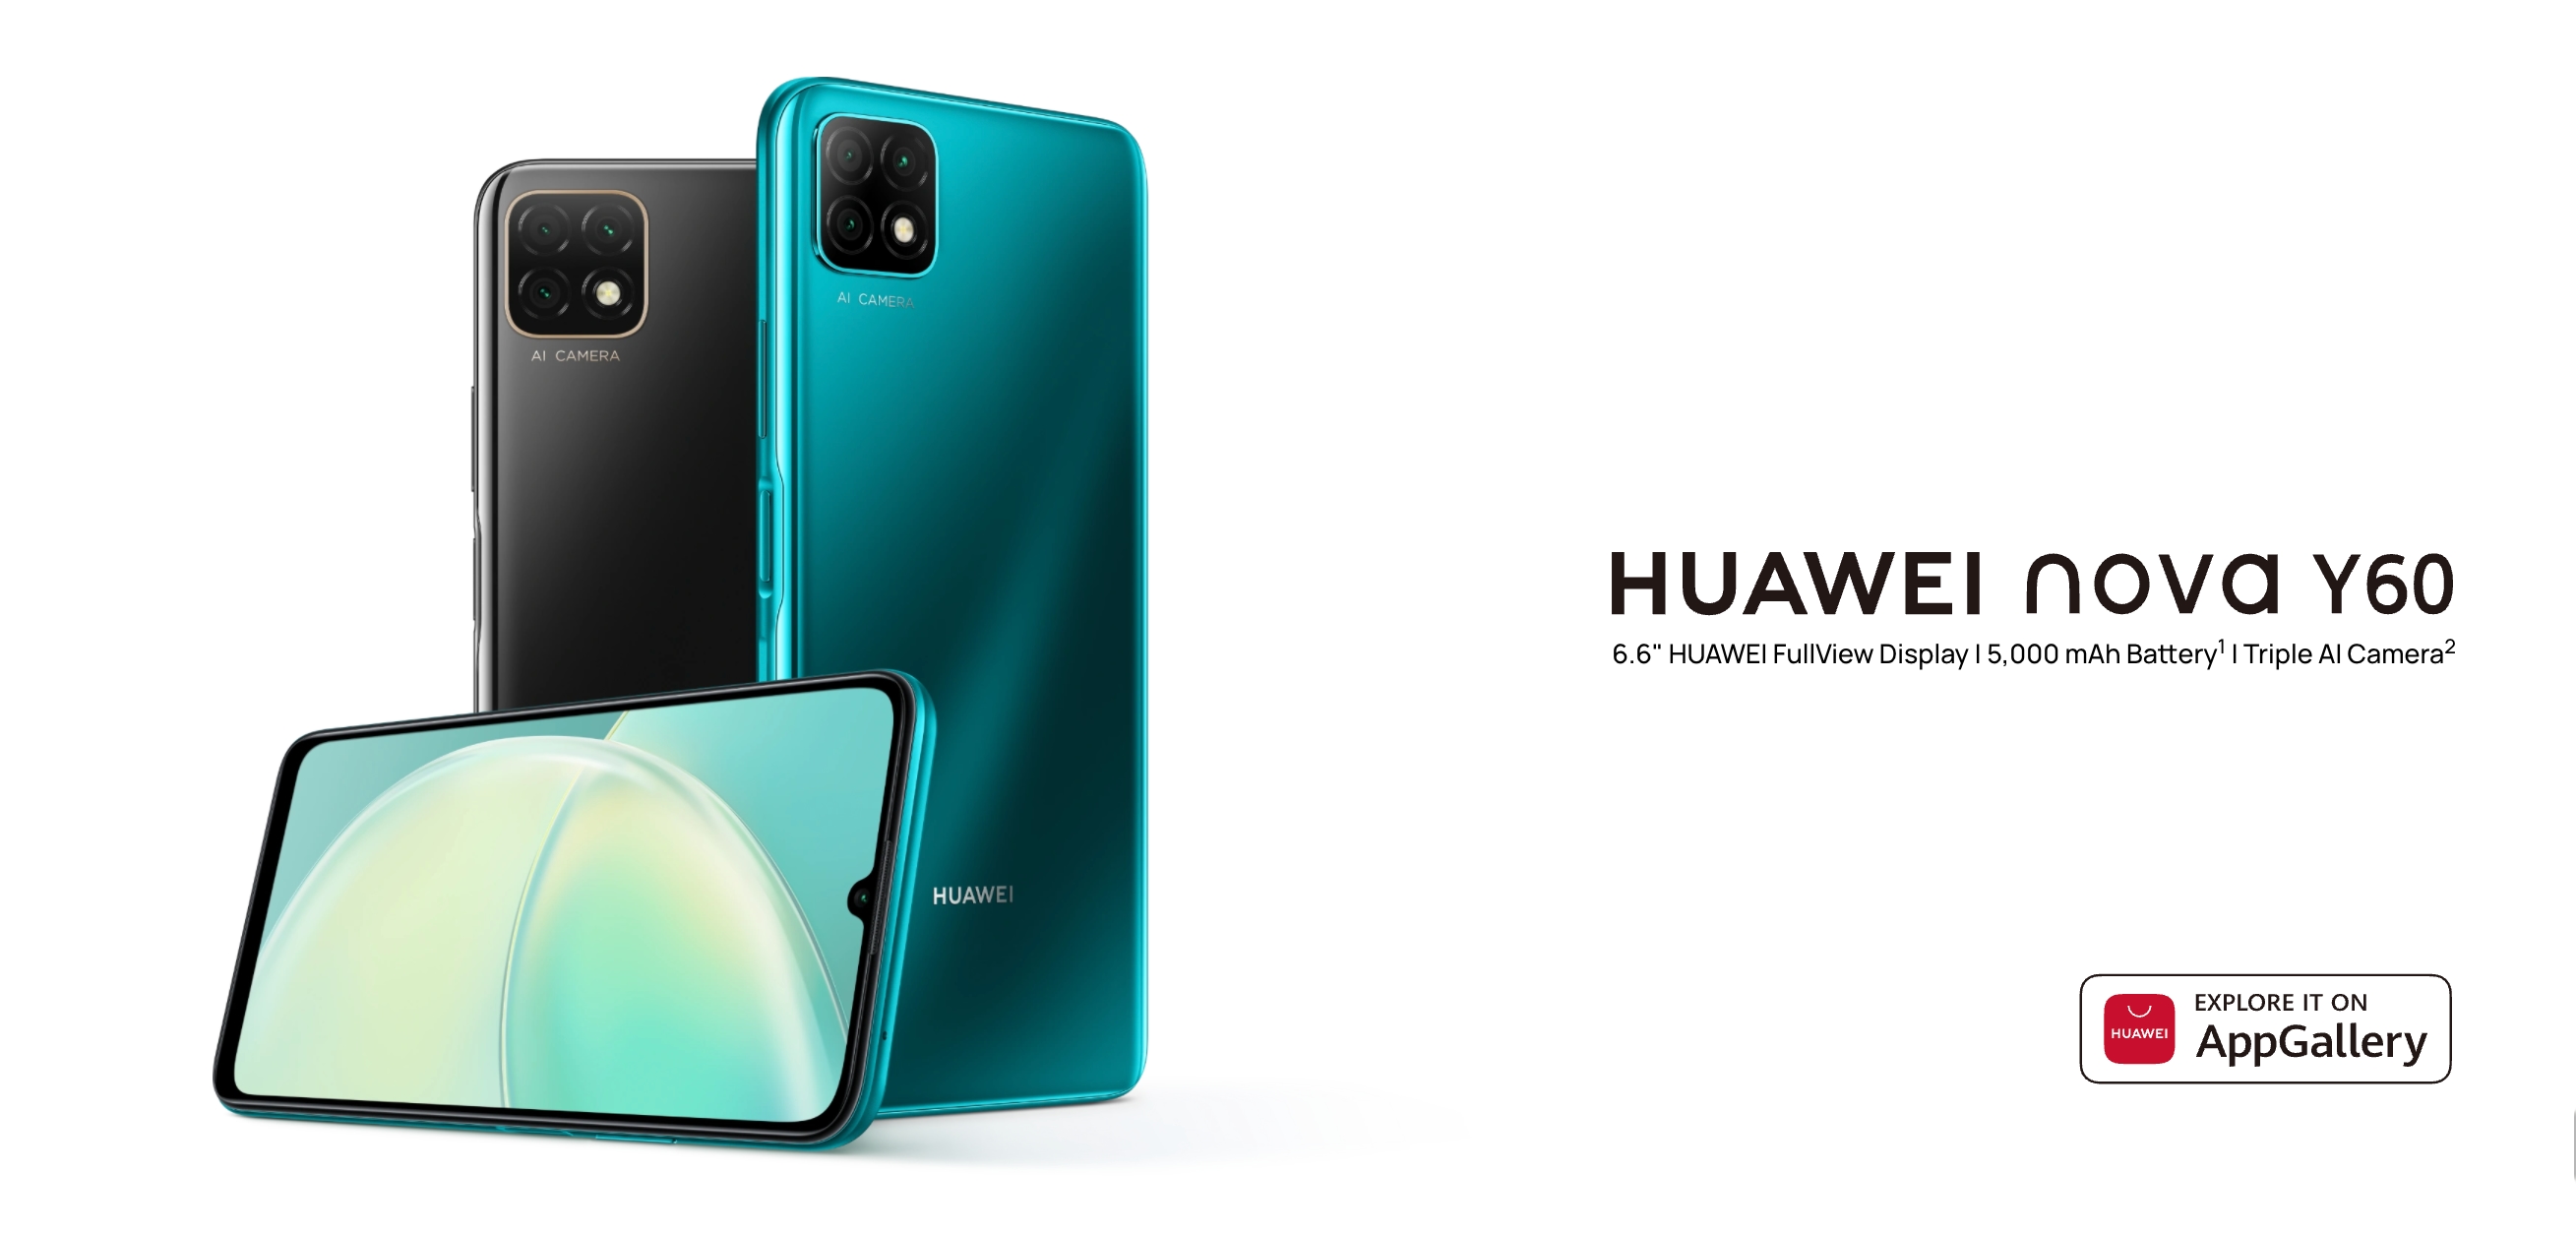 Huawei Nova Y60: budżetowy smartfon z 6,6-calowym ekranem, potrójnym aparatem 13MP i baterią 5000mAh